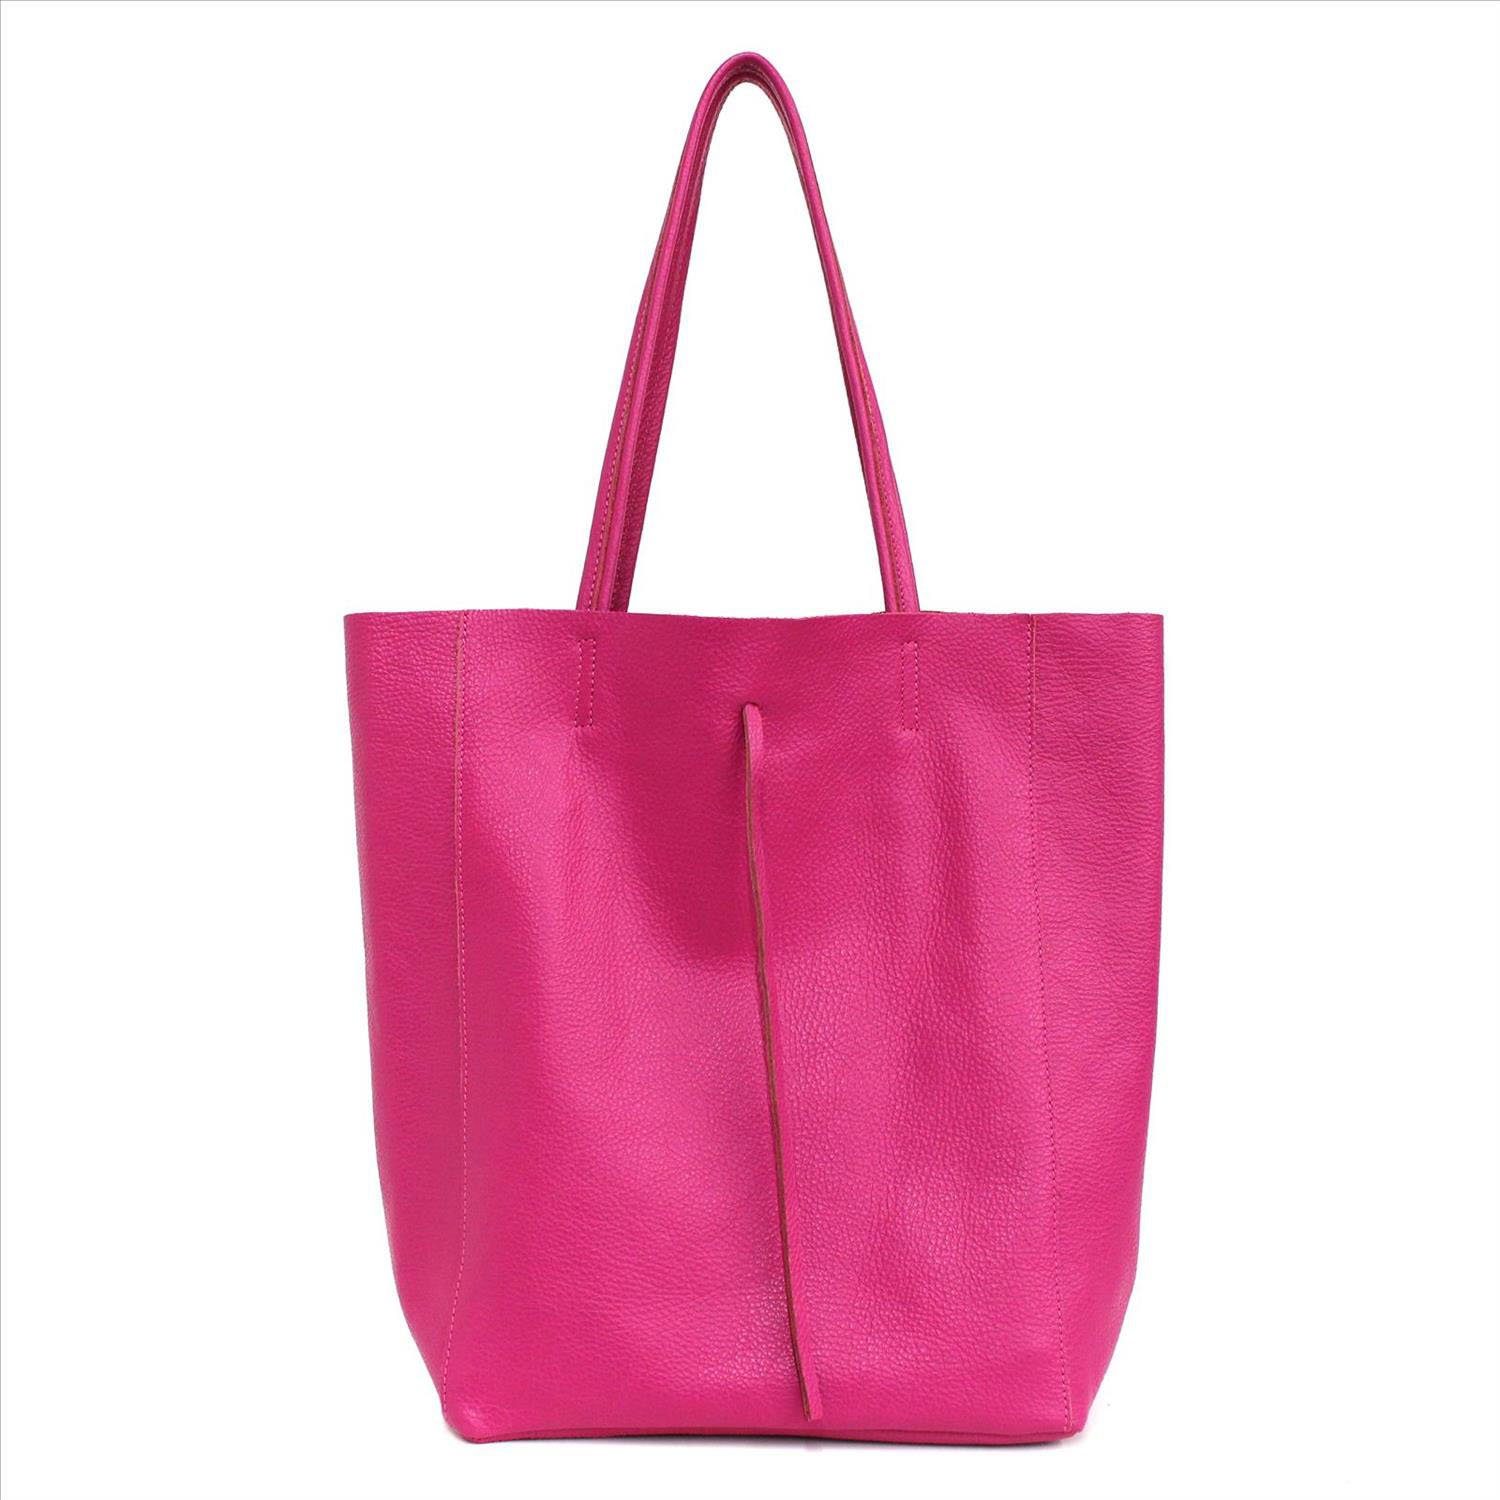 PRINIDOR Shopper Shopper Ledertasche Echtleder, echt Leder, Made in Italy pink